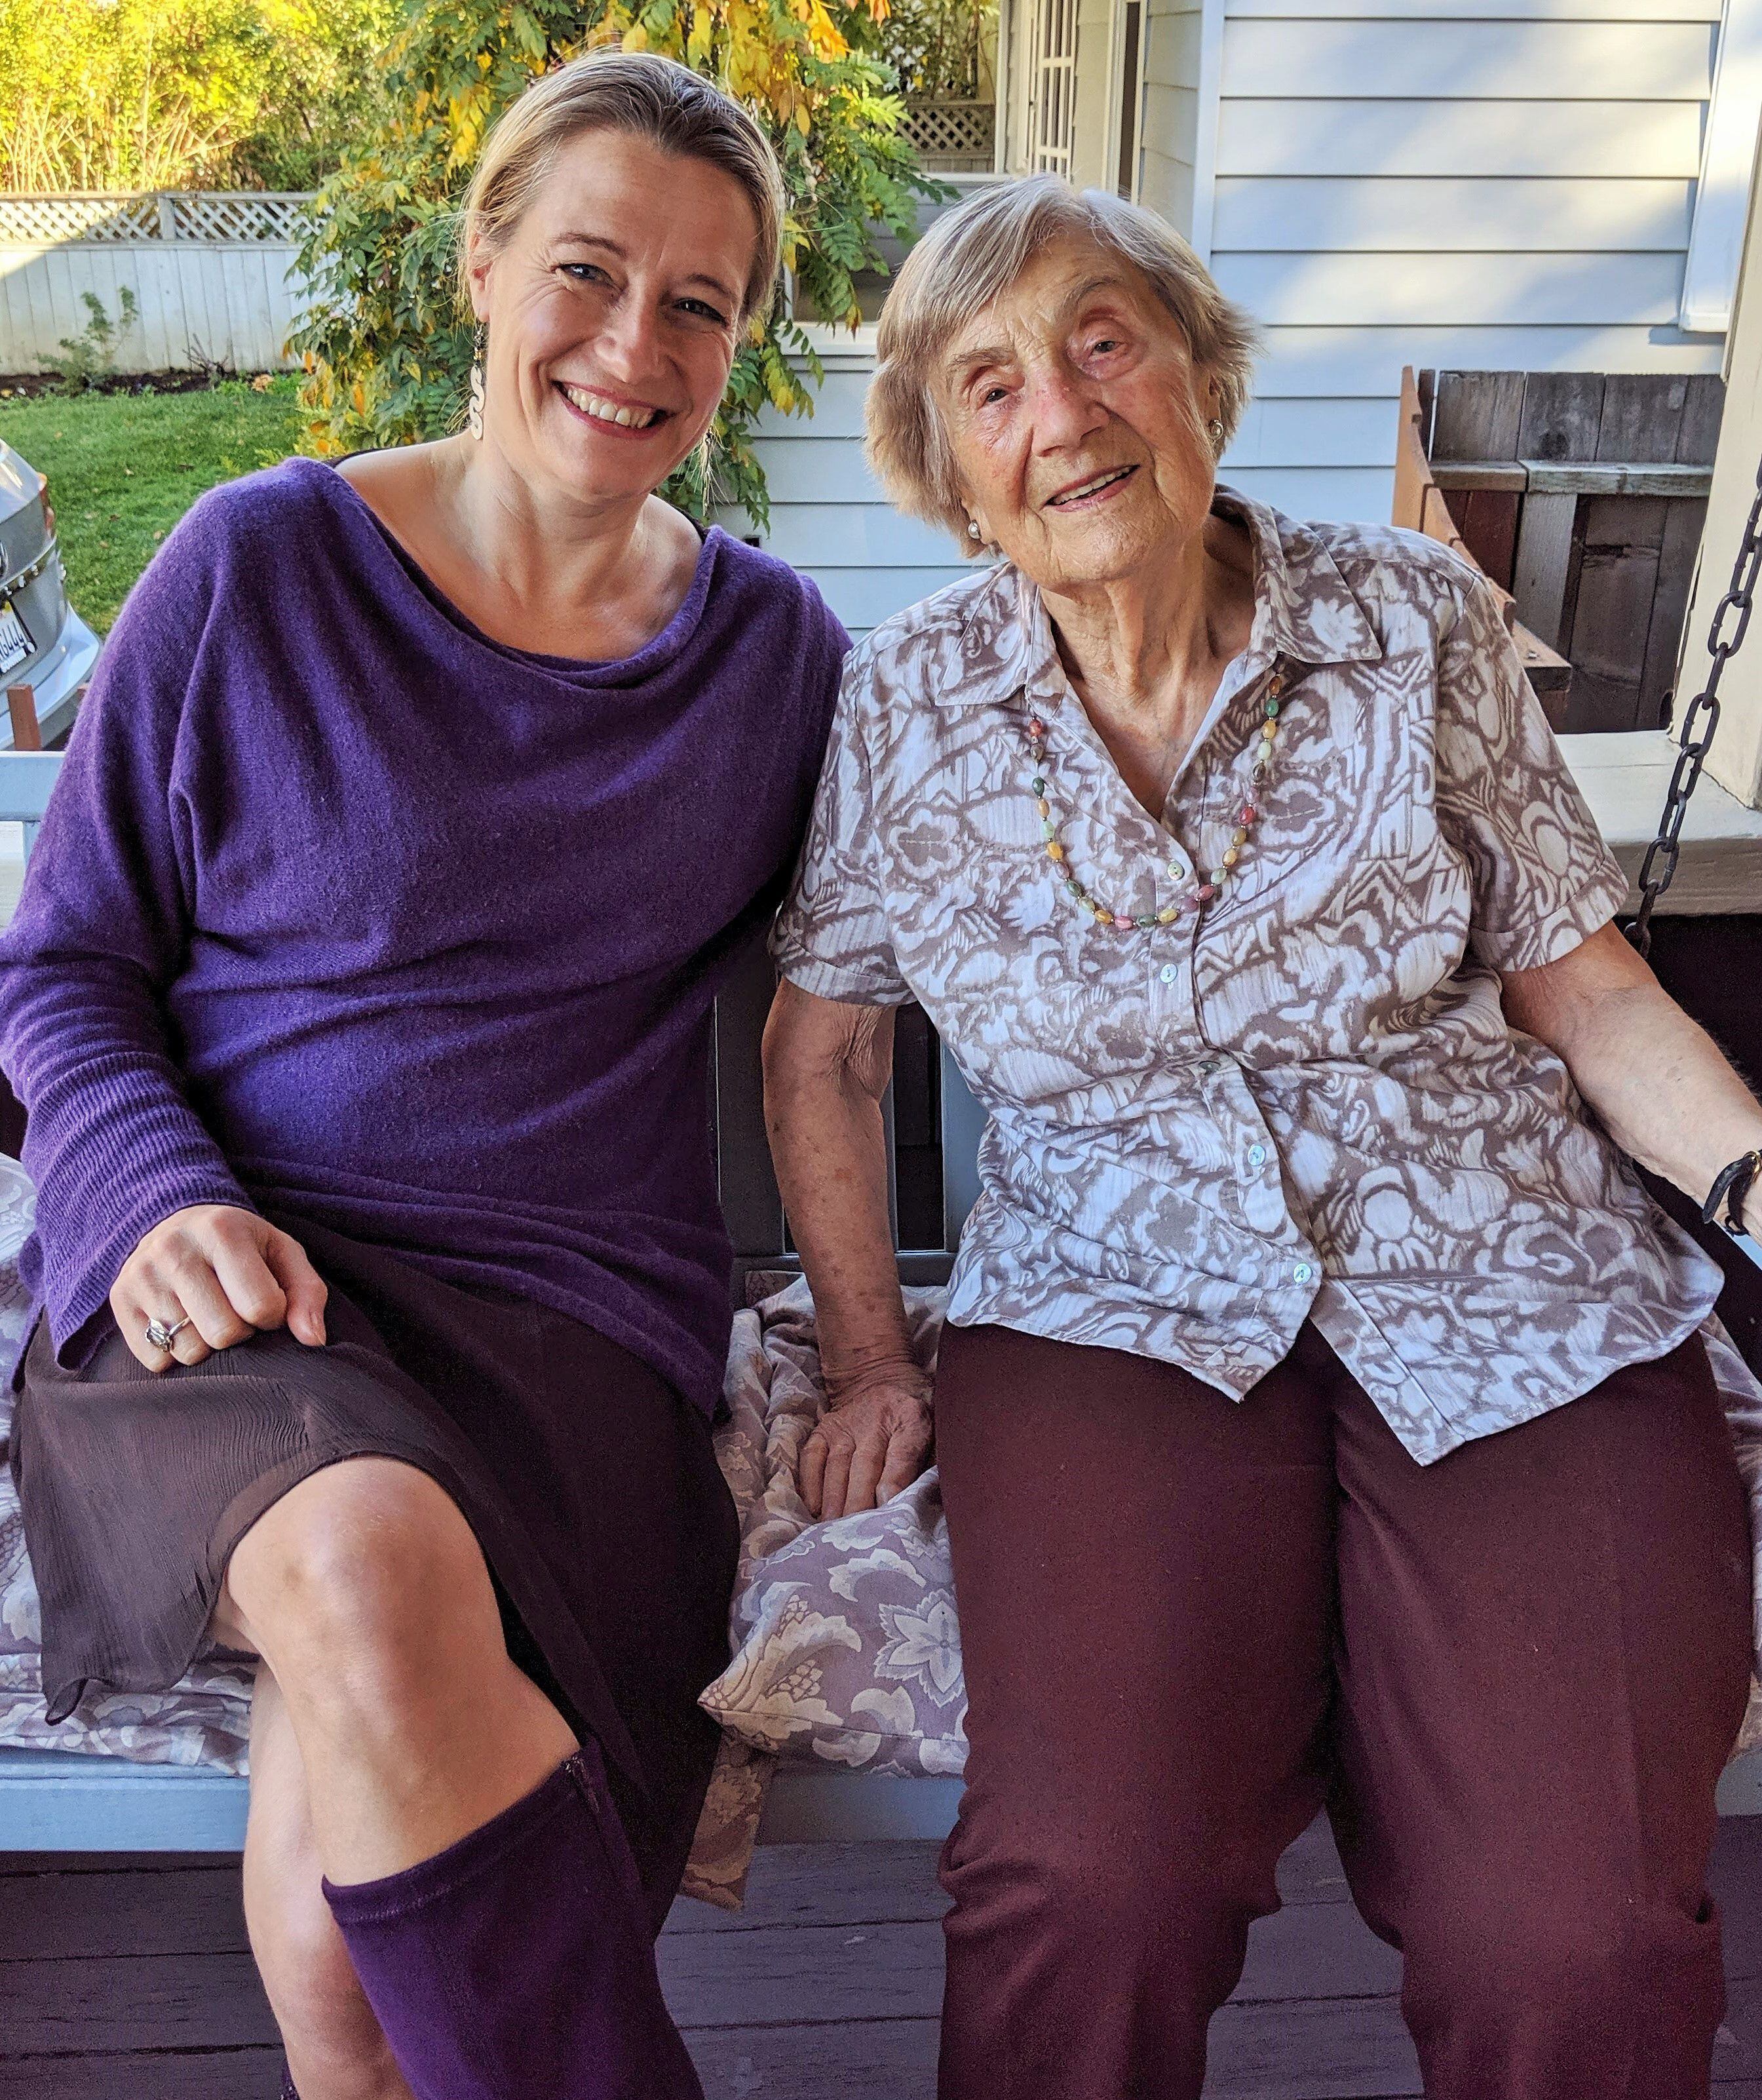 La autora del libro, Lucy Adlington, con una de las modistas supervivientes de Auschwitz, Bracha Berkovic (Kohut tras casarse), en la casa de esta última en 2019 en San Francisco, California (EE UU).